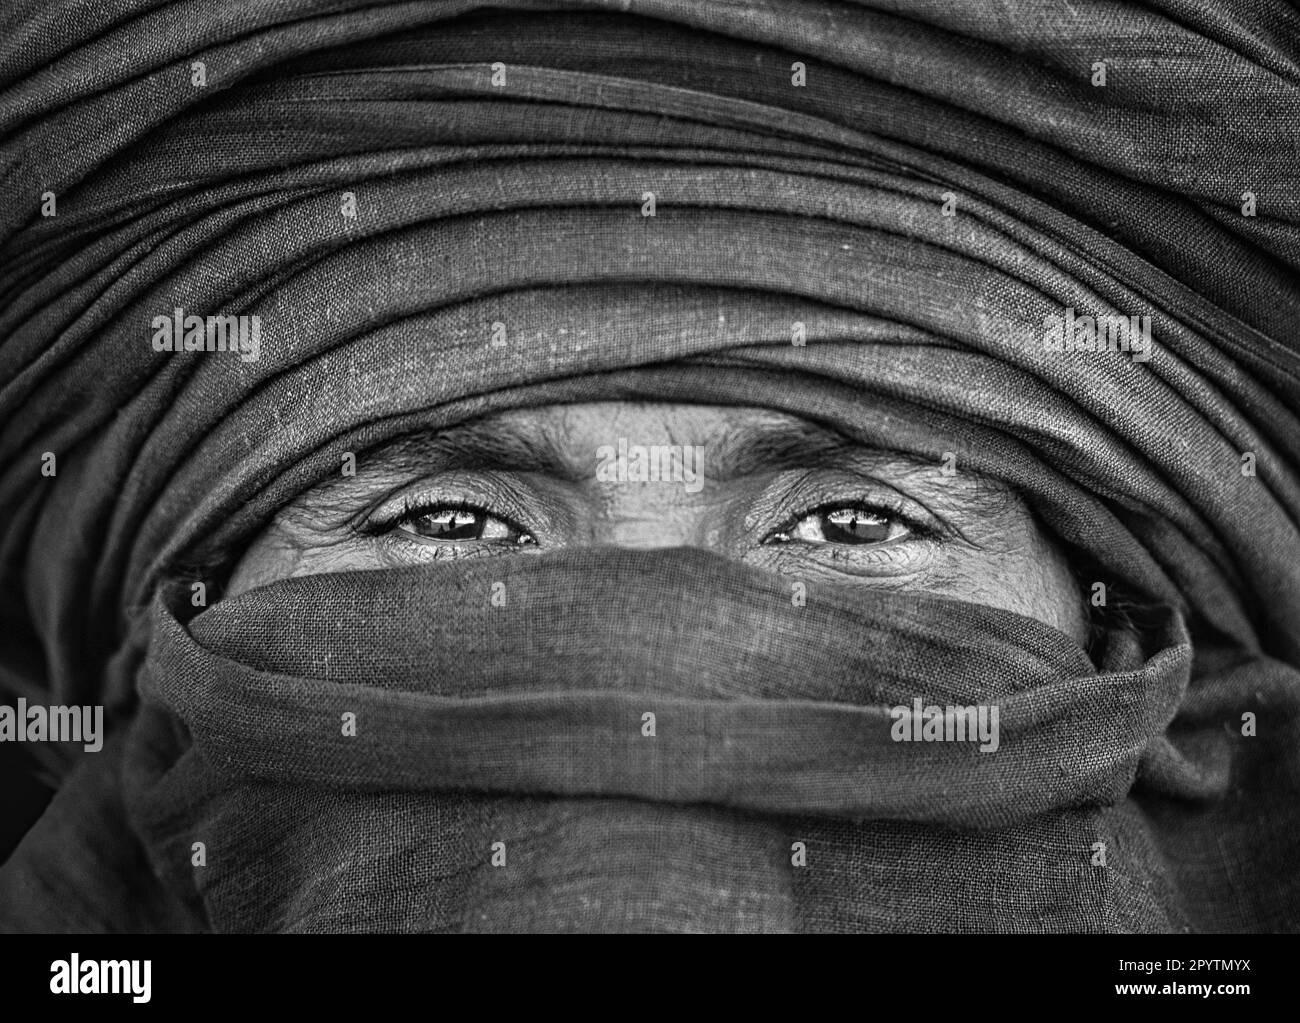 Algérie, près de Djanet. Désert du Sahara. Homme de la tribu Tuareg. Portrait. Noir et blanc. Banque D'Images